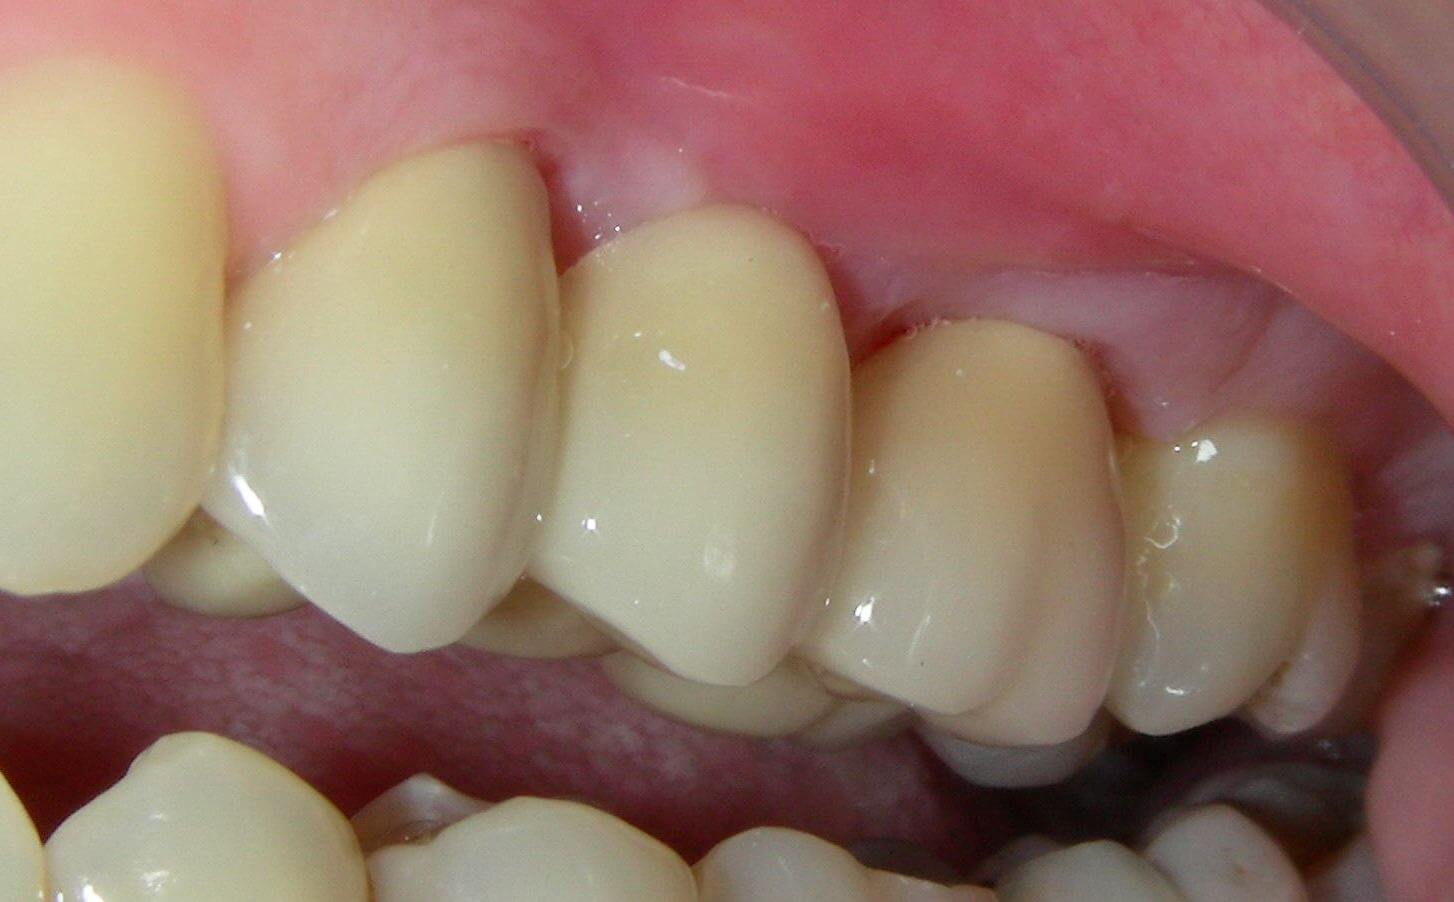 металлокерамические зубы цены для пациентов